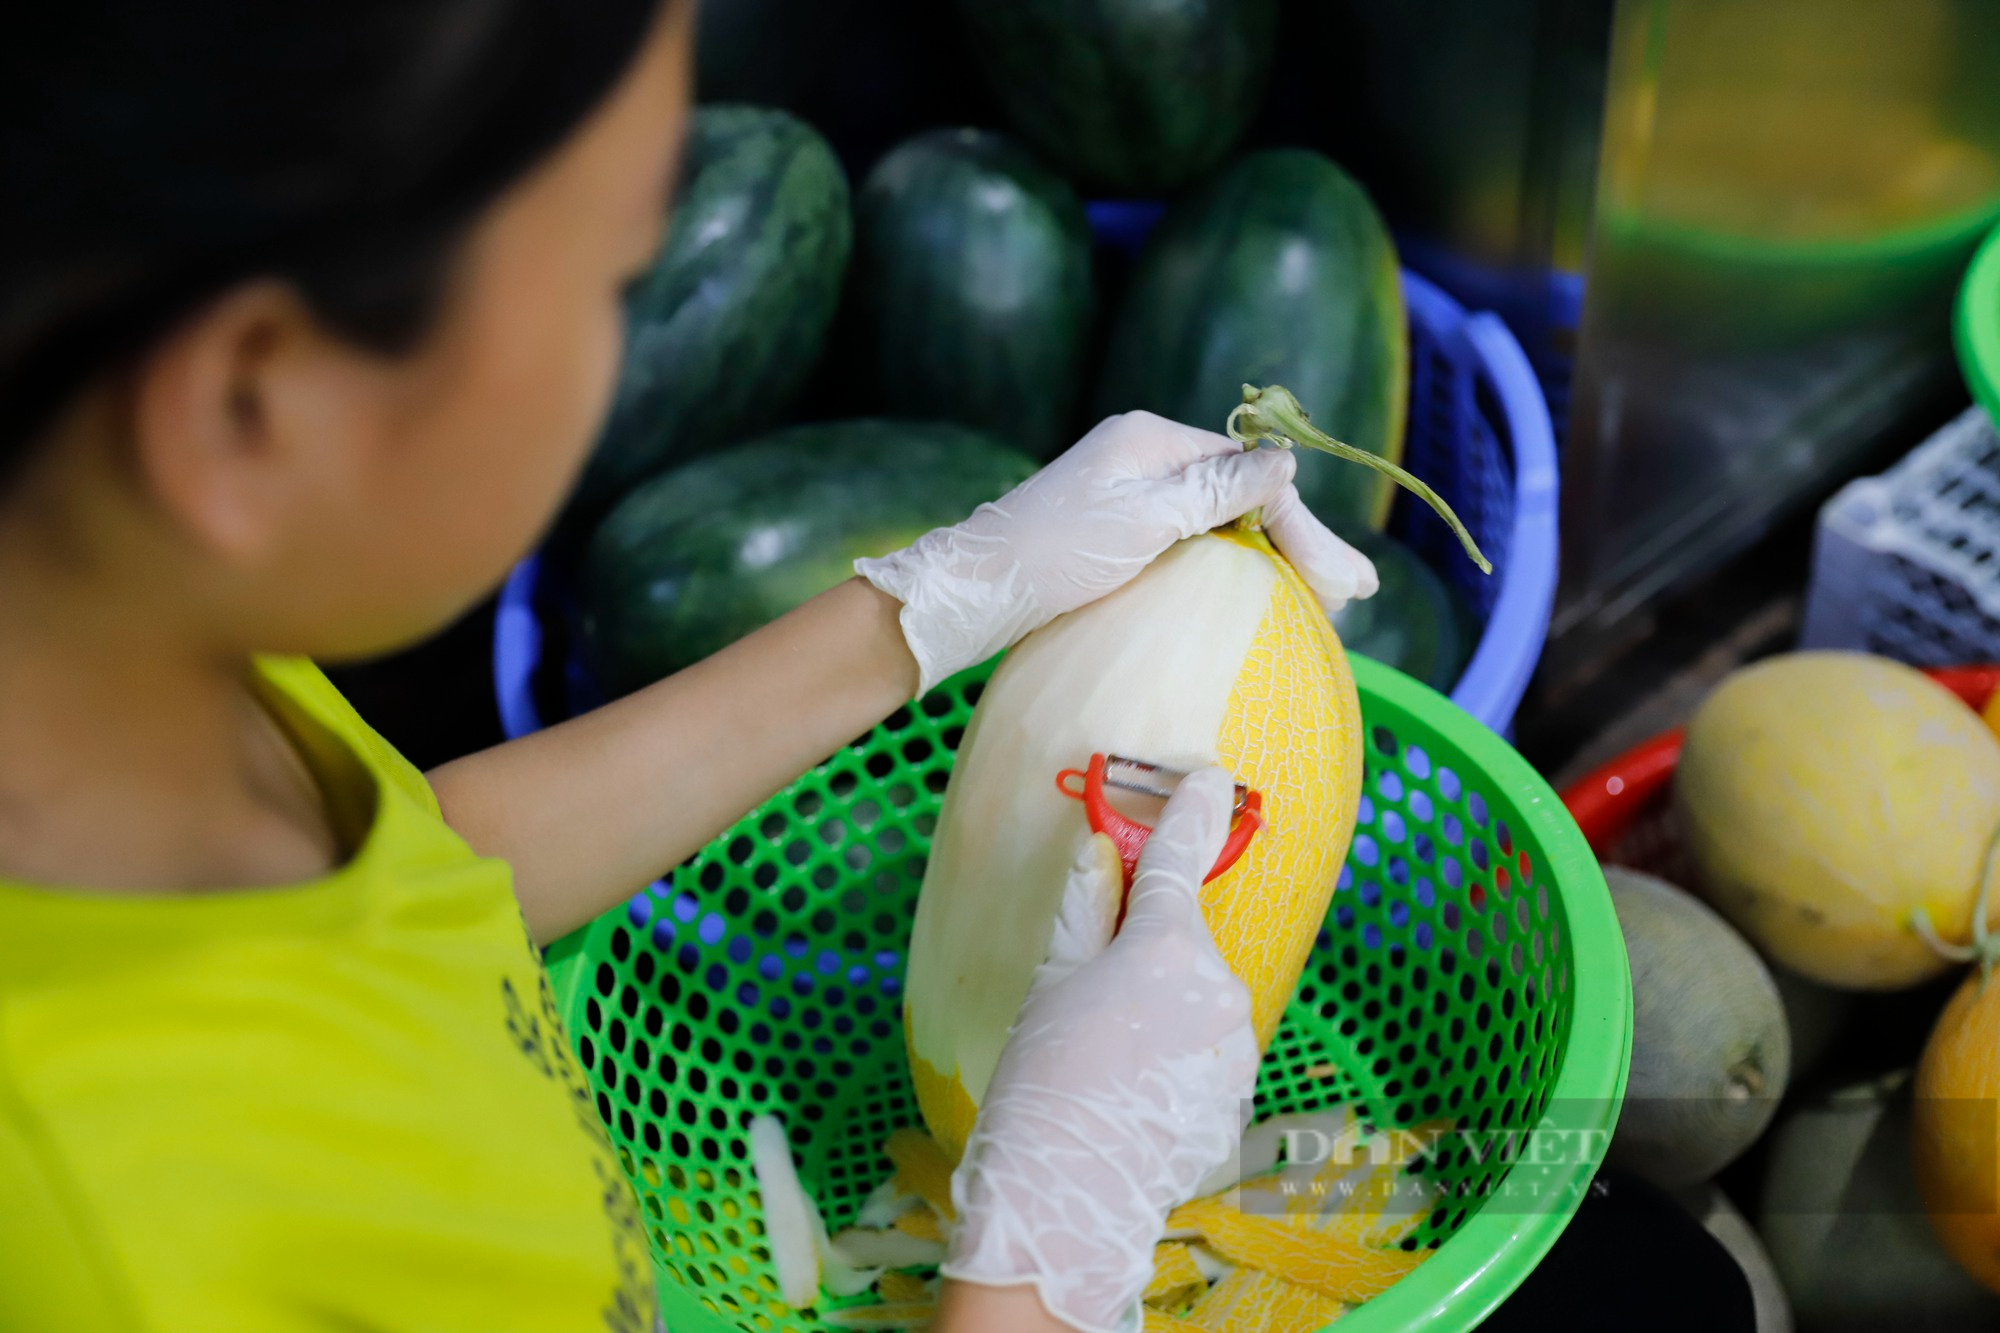 Buffet hoa quả giá siêu rẻ đổ bộ Hà Nội, nhân viên mỏi tay gọt hàng trăm kg/ngày - Ảnh 8.